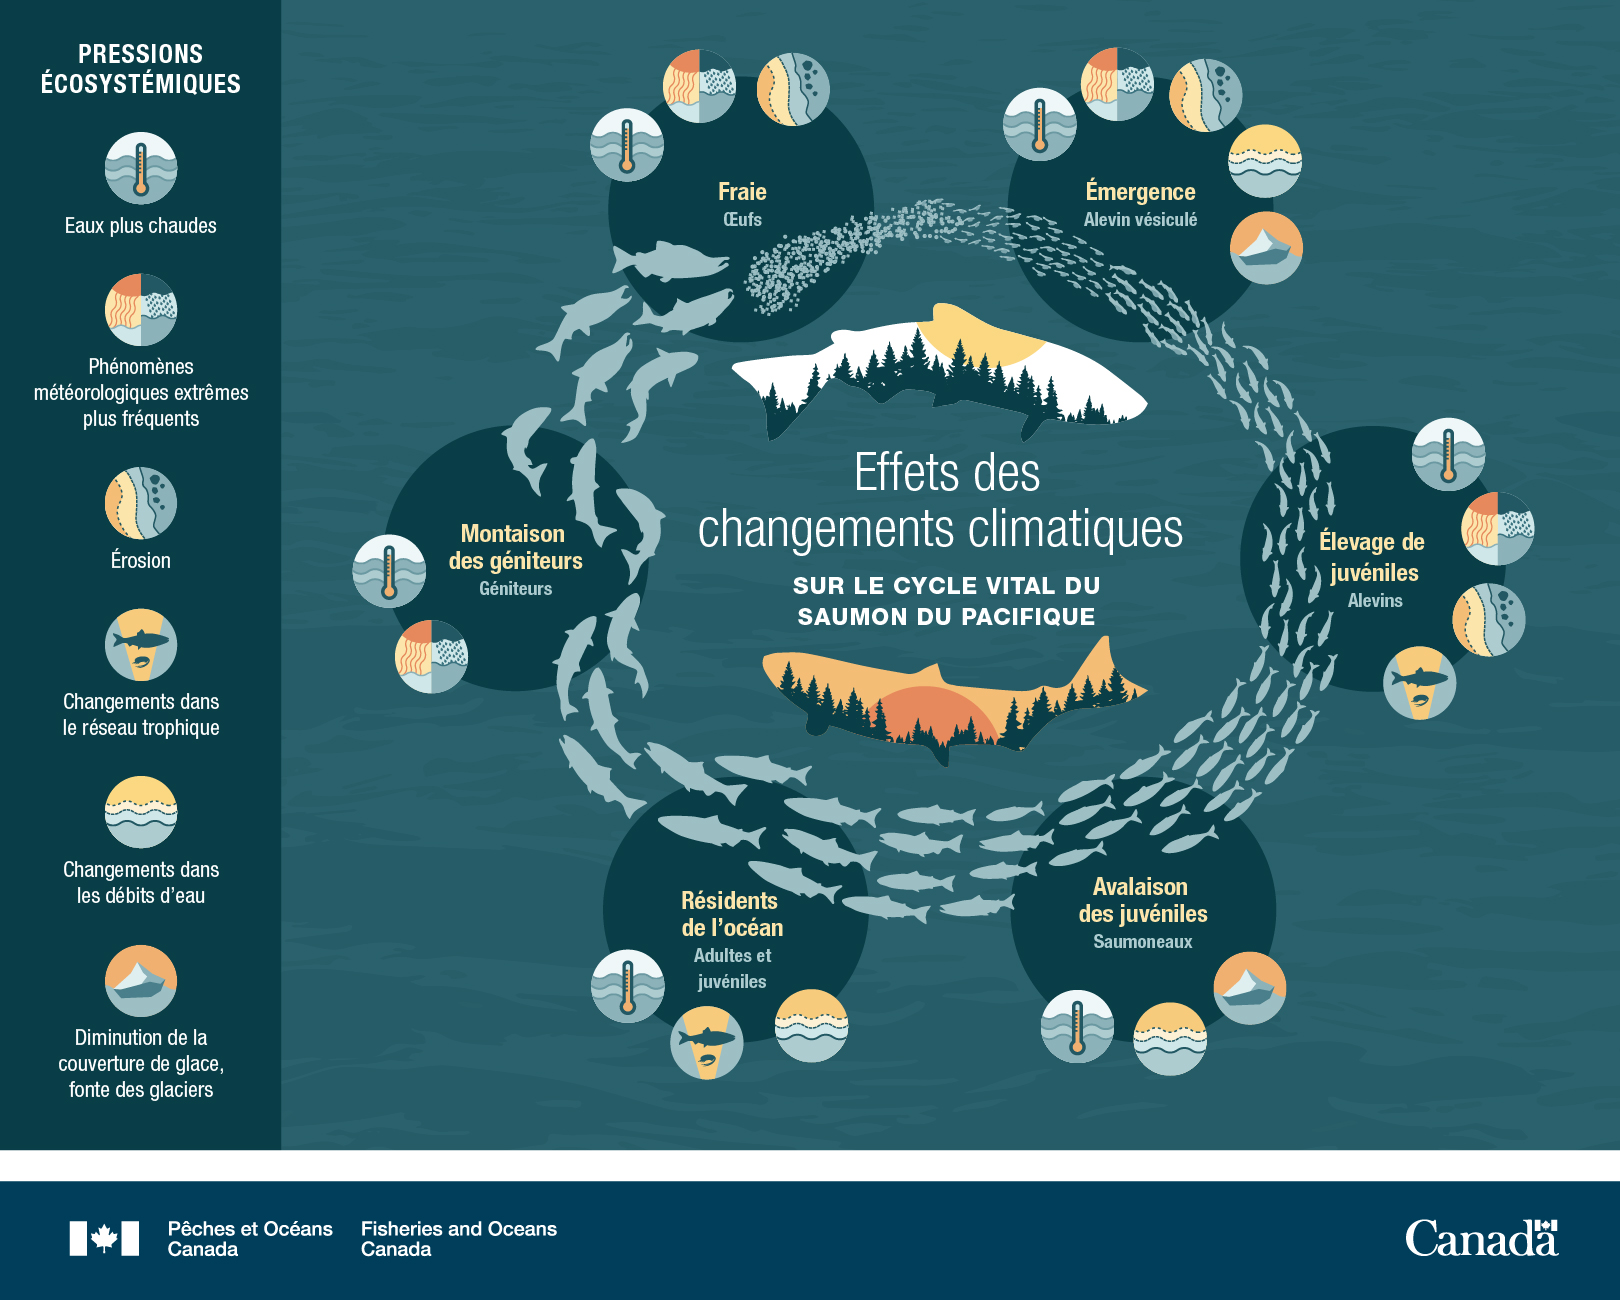 Les changements climatiques ont des répercussions sur le cycle biologique du saumon du Pacifique